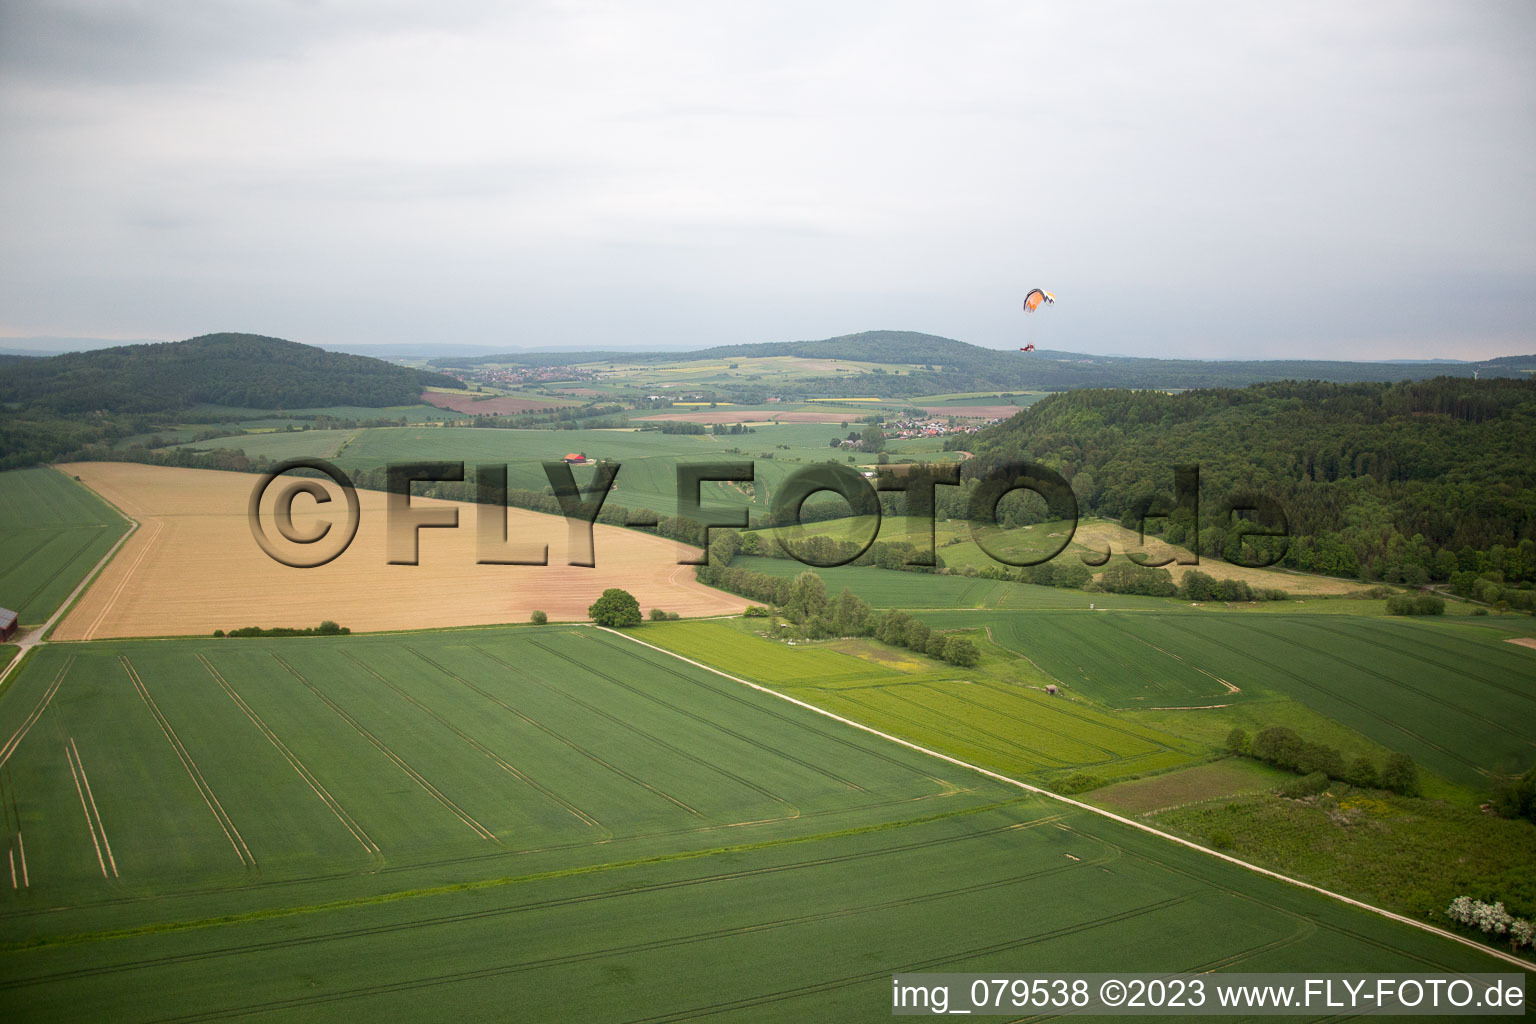 Luftaufnahme von Eberhausen, Propellersuche erfolglos im Bundesland Niedersachsen, Deutschland